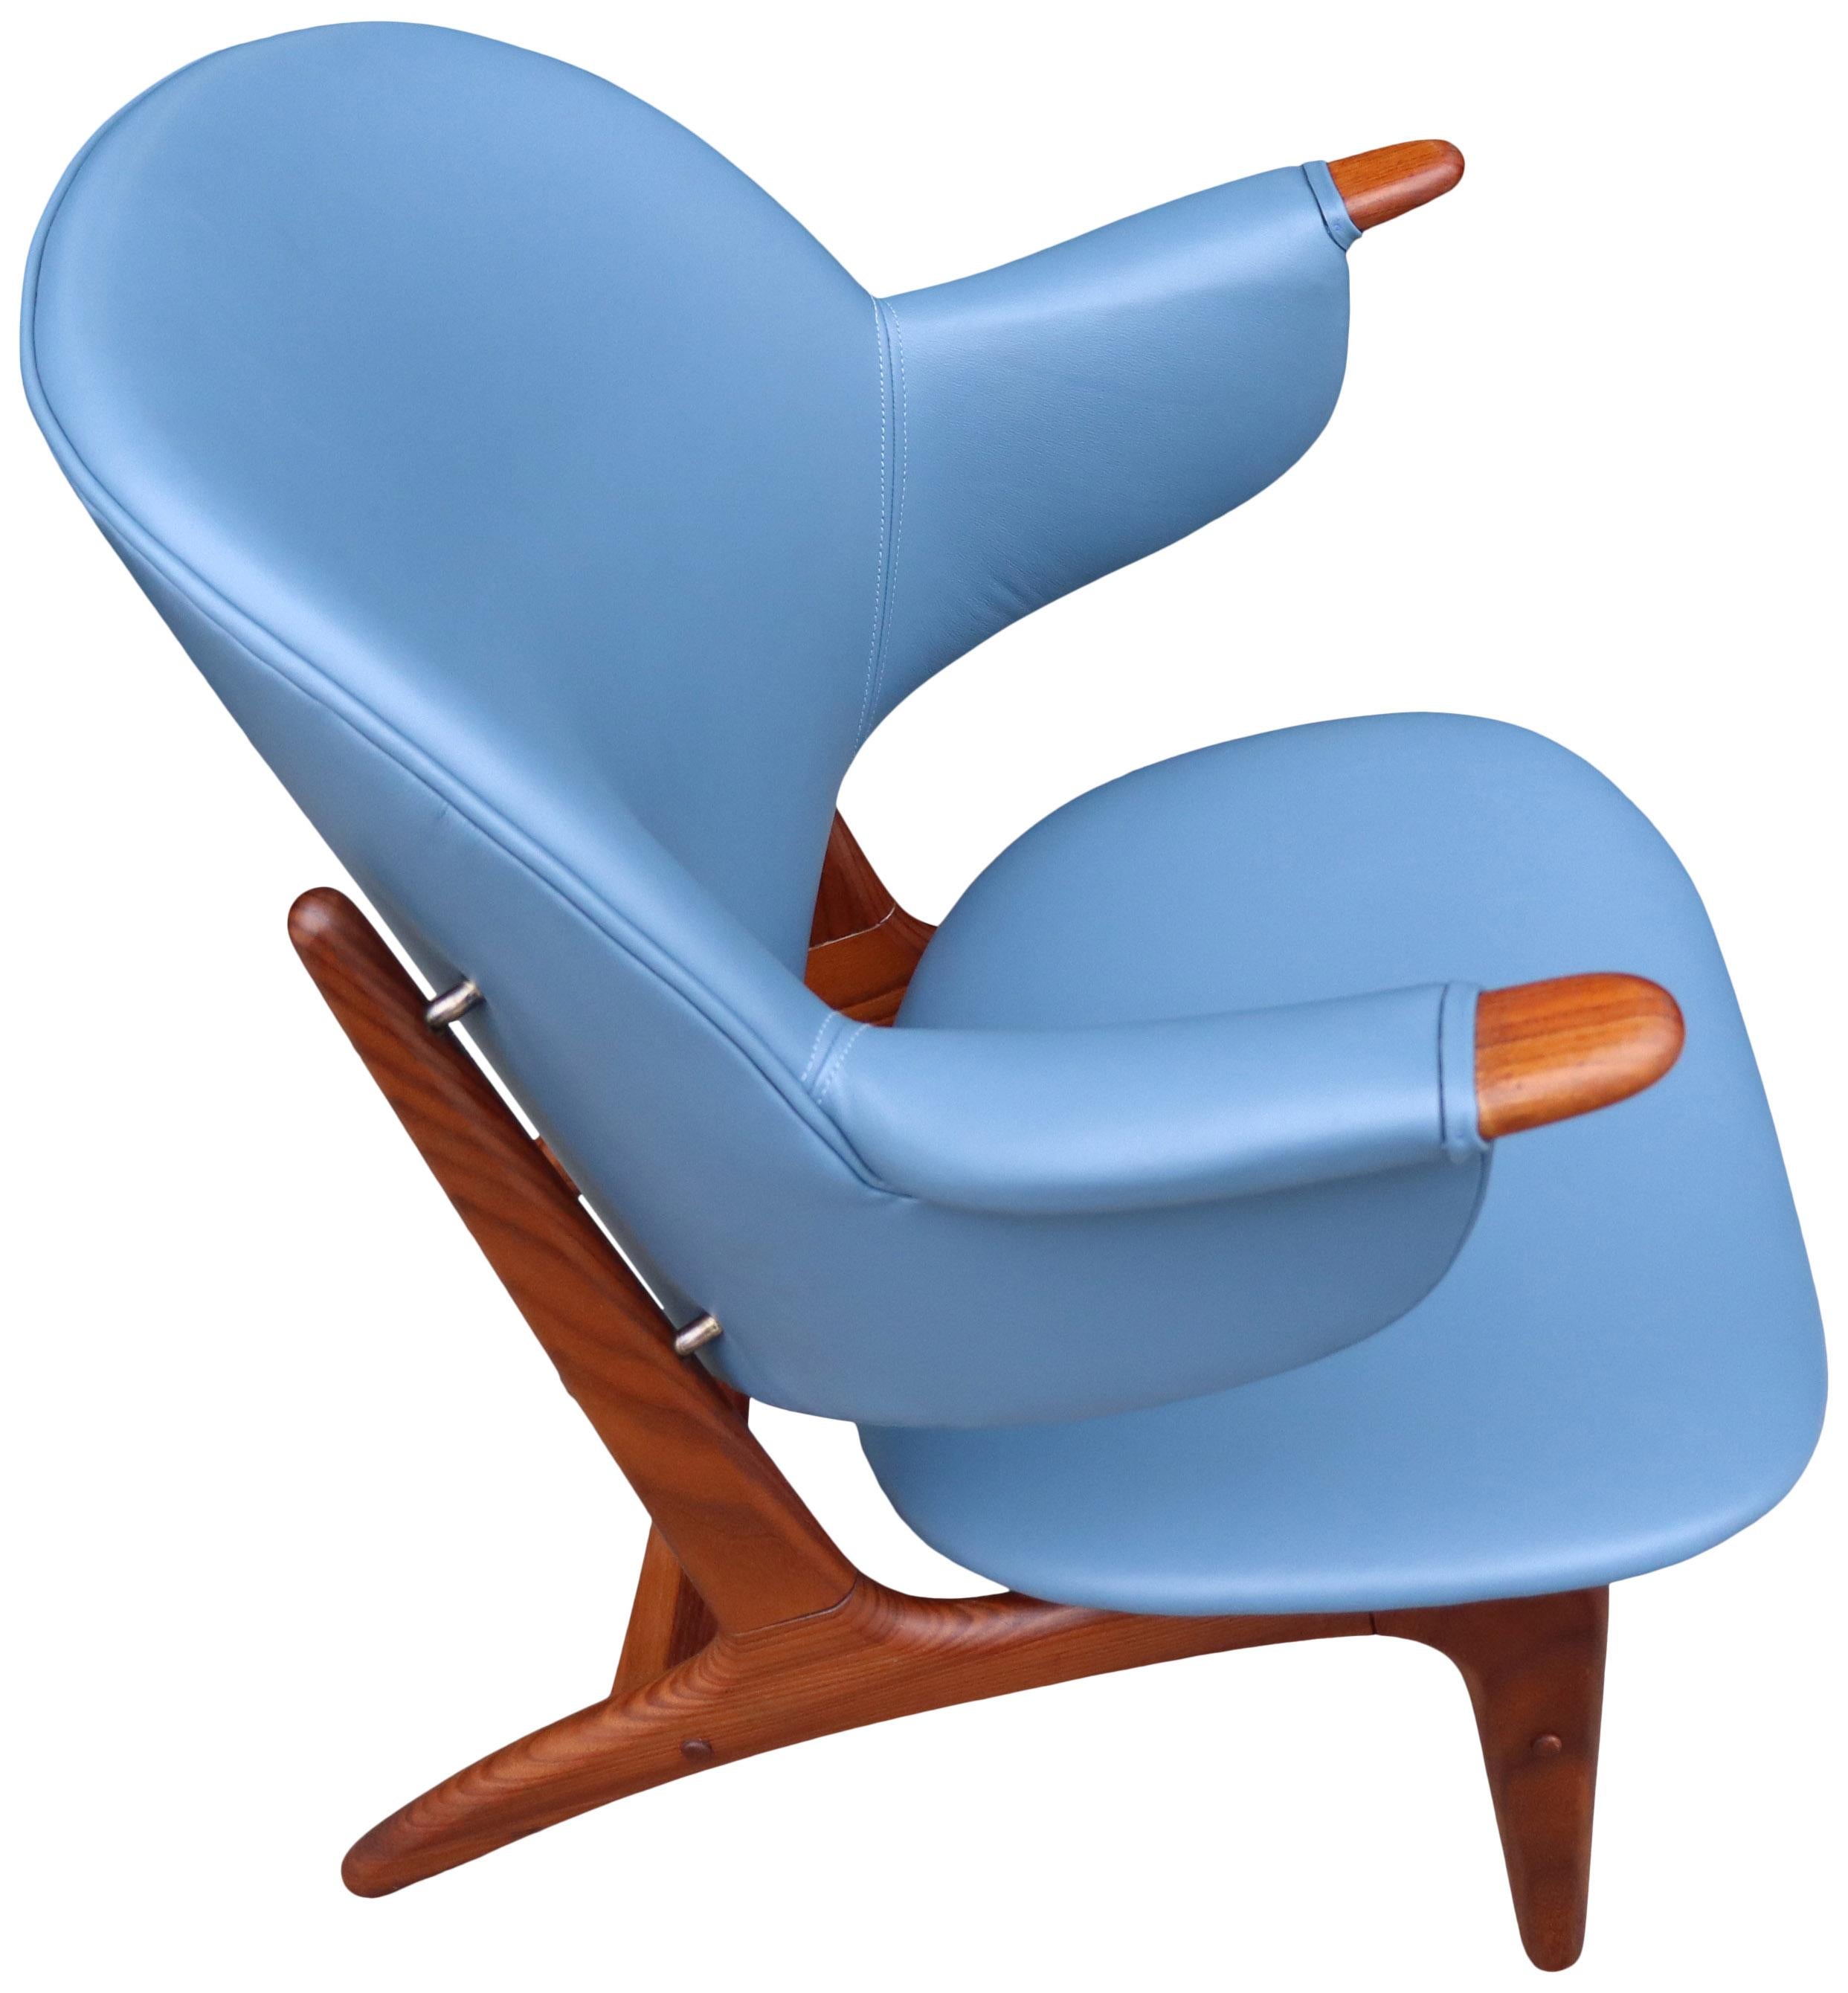 Nous vous présentons cette chaise longue incroyablement rare d'Arne Hovmand-Olsen. Nouvellement recouvert d'un cuir luxueux. Cette chaise longue plutôt petite s'adapte parfaitement à la forme humaine. Souvent appelée chaise bébé papa ours en